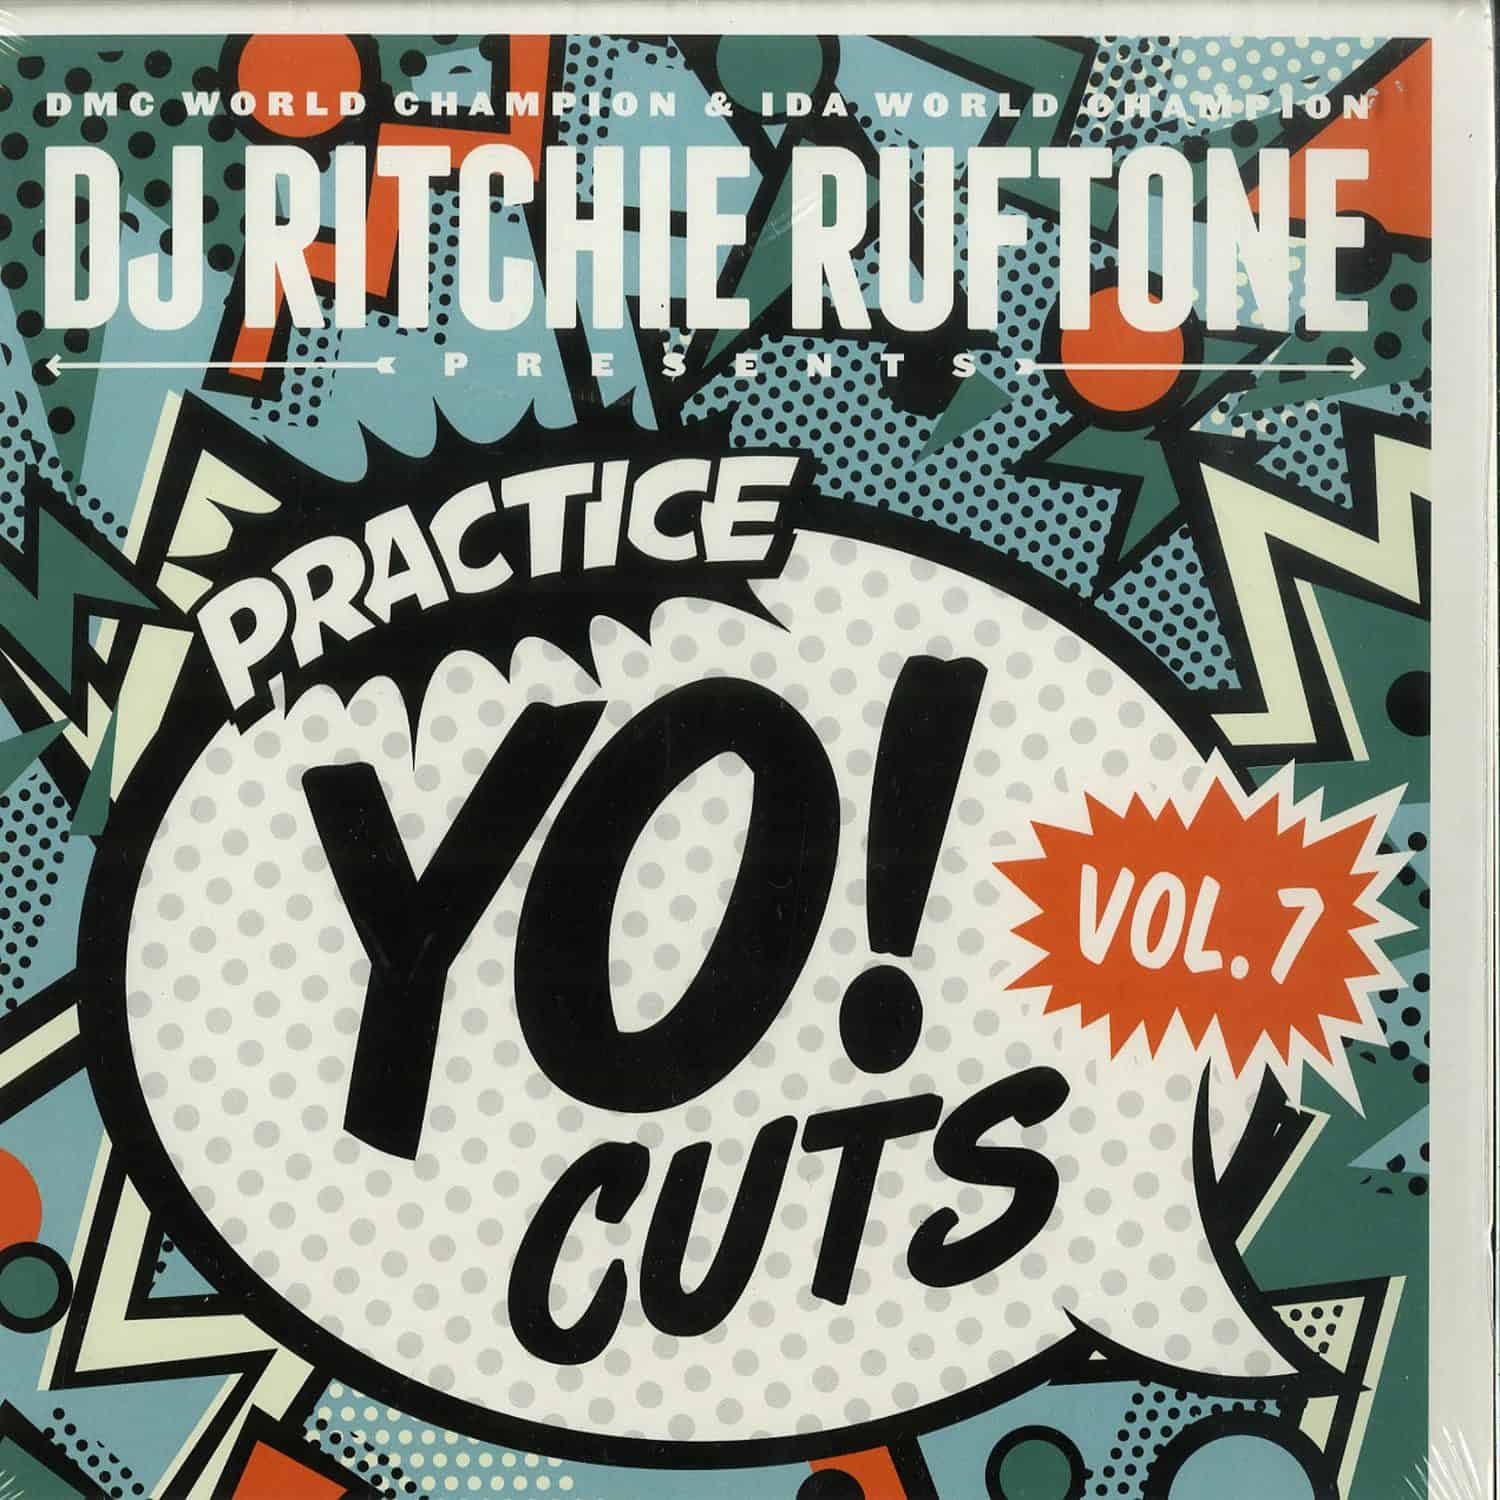 DJ Ritchie Ruftone - PRACTICE YO! CUTS VOL. 7 